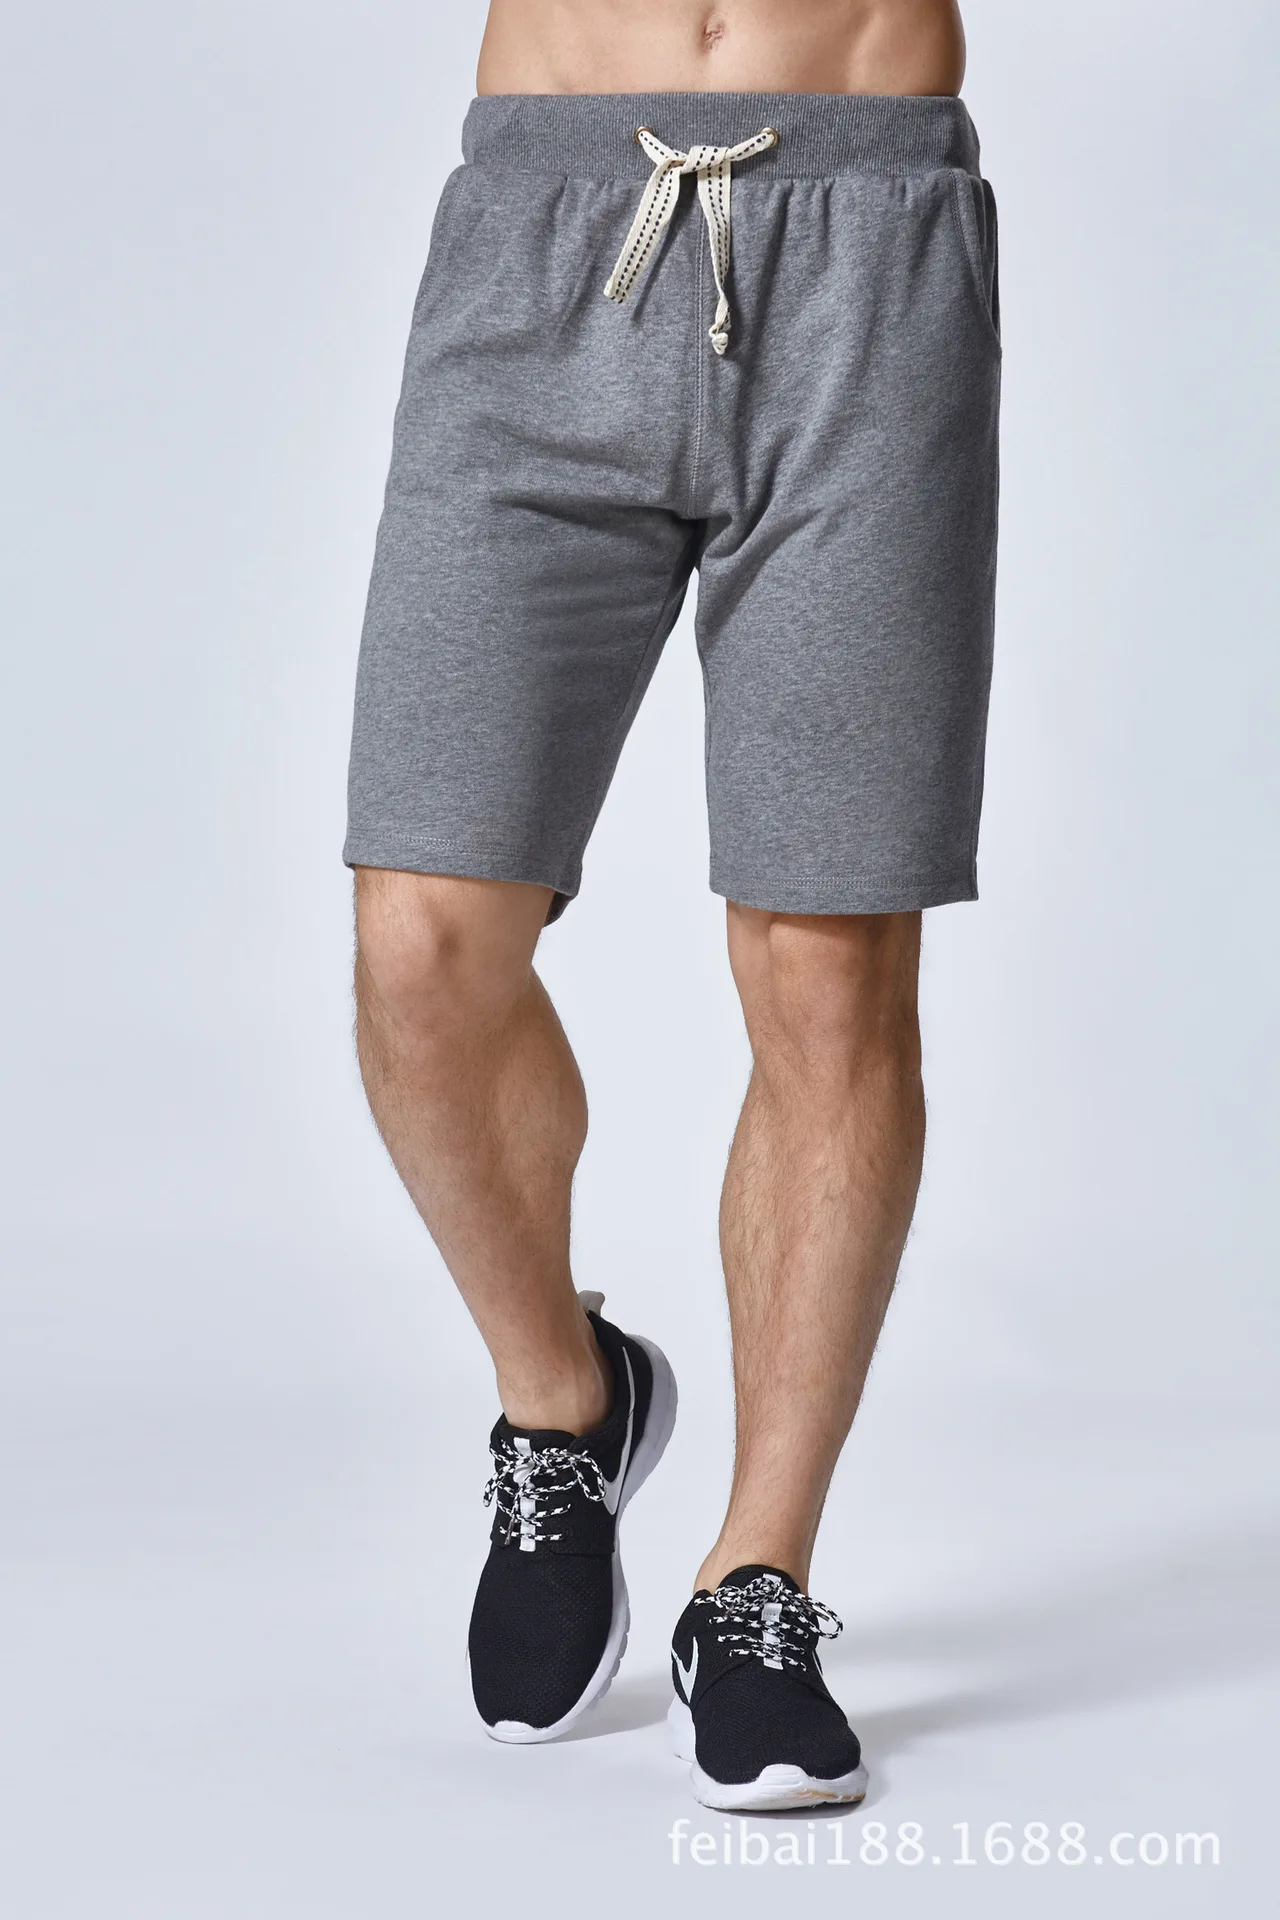 Fanceey однотонные серые спортивные шорты для мужчин фитнес тренажерный зал х/б мужские шорты спортивная одежда беговые шорты Мужская спортивная одежда 6 цветов - Цвет: dark grey